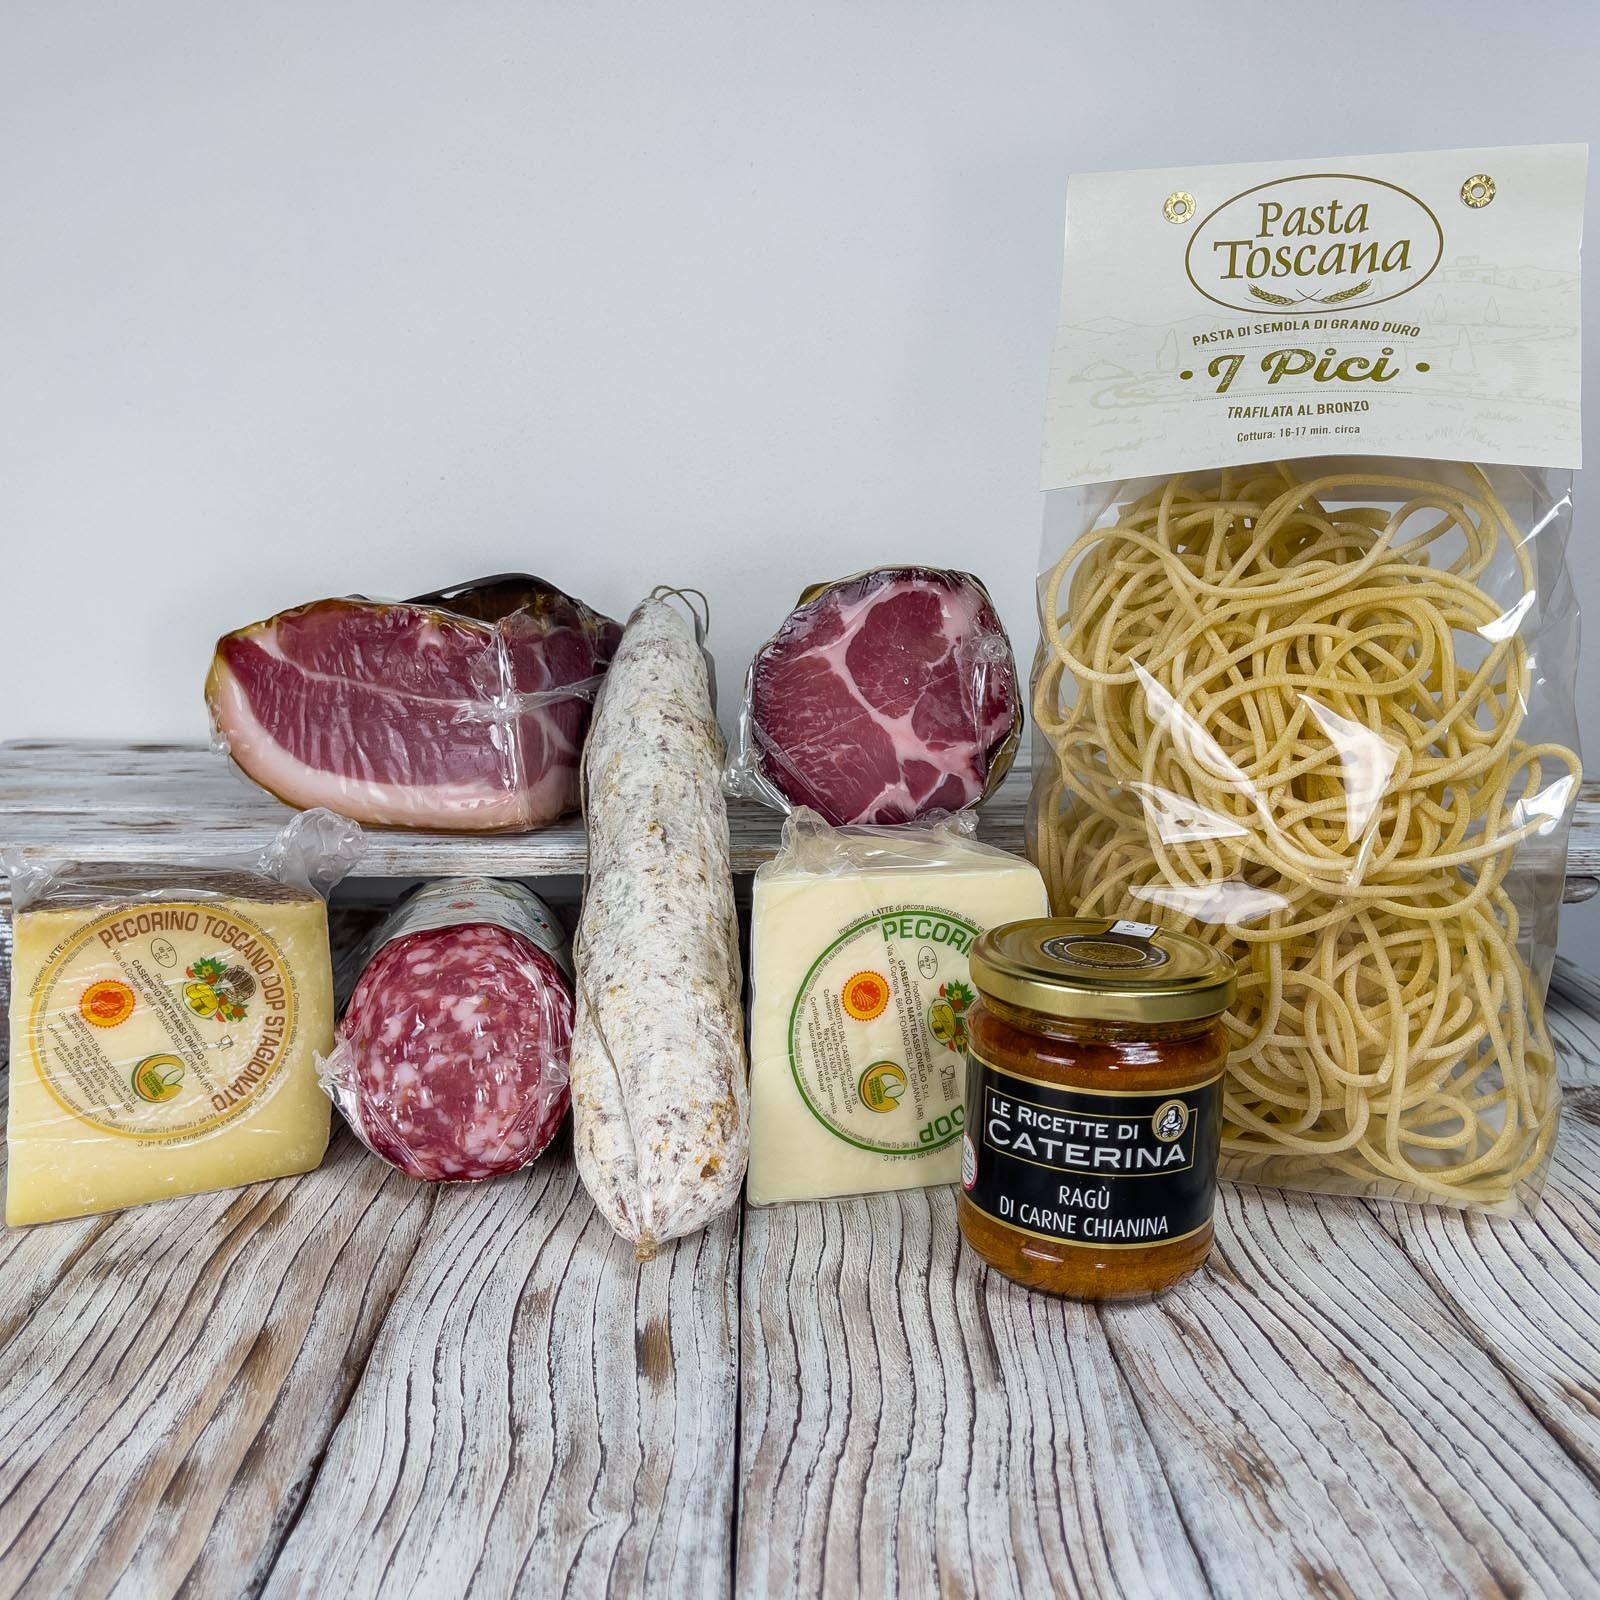 Die Verkostungsbox - „I Sapori Della Valdichiana” besteht aus einer Auswahl an Produkten für insgesamt ca. 4,2 kg. Perfekt für die Zubereitung einer riesigen Platte mit toskanischem Aufschnitt und Käse als Vorspeise und „Pici” mit Chianinafleisch Sauce, einem hochwertigen ersten Gang.